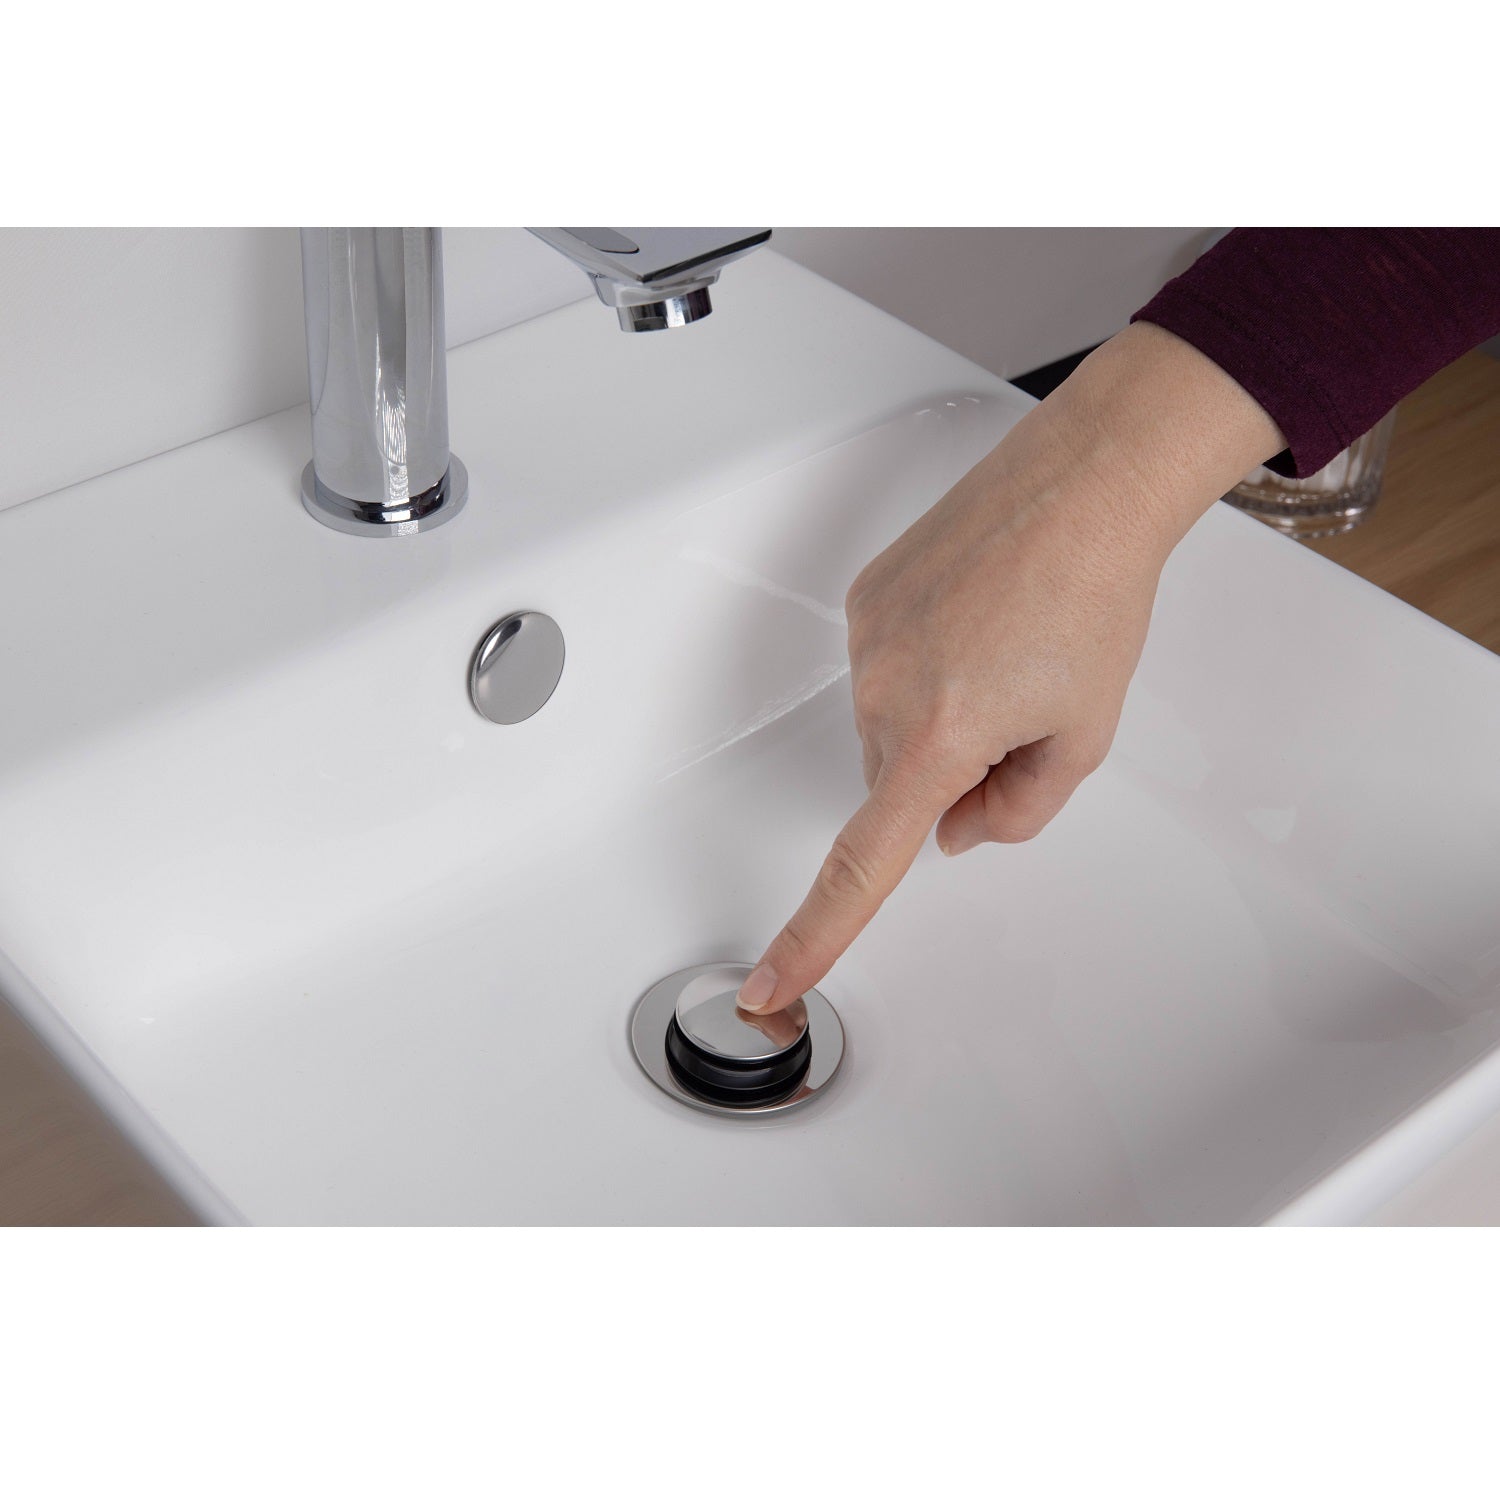 Válvula lavabo clic clac – 🚿 migriferia